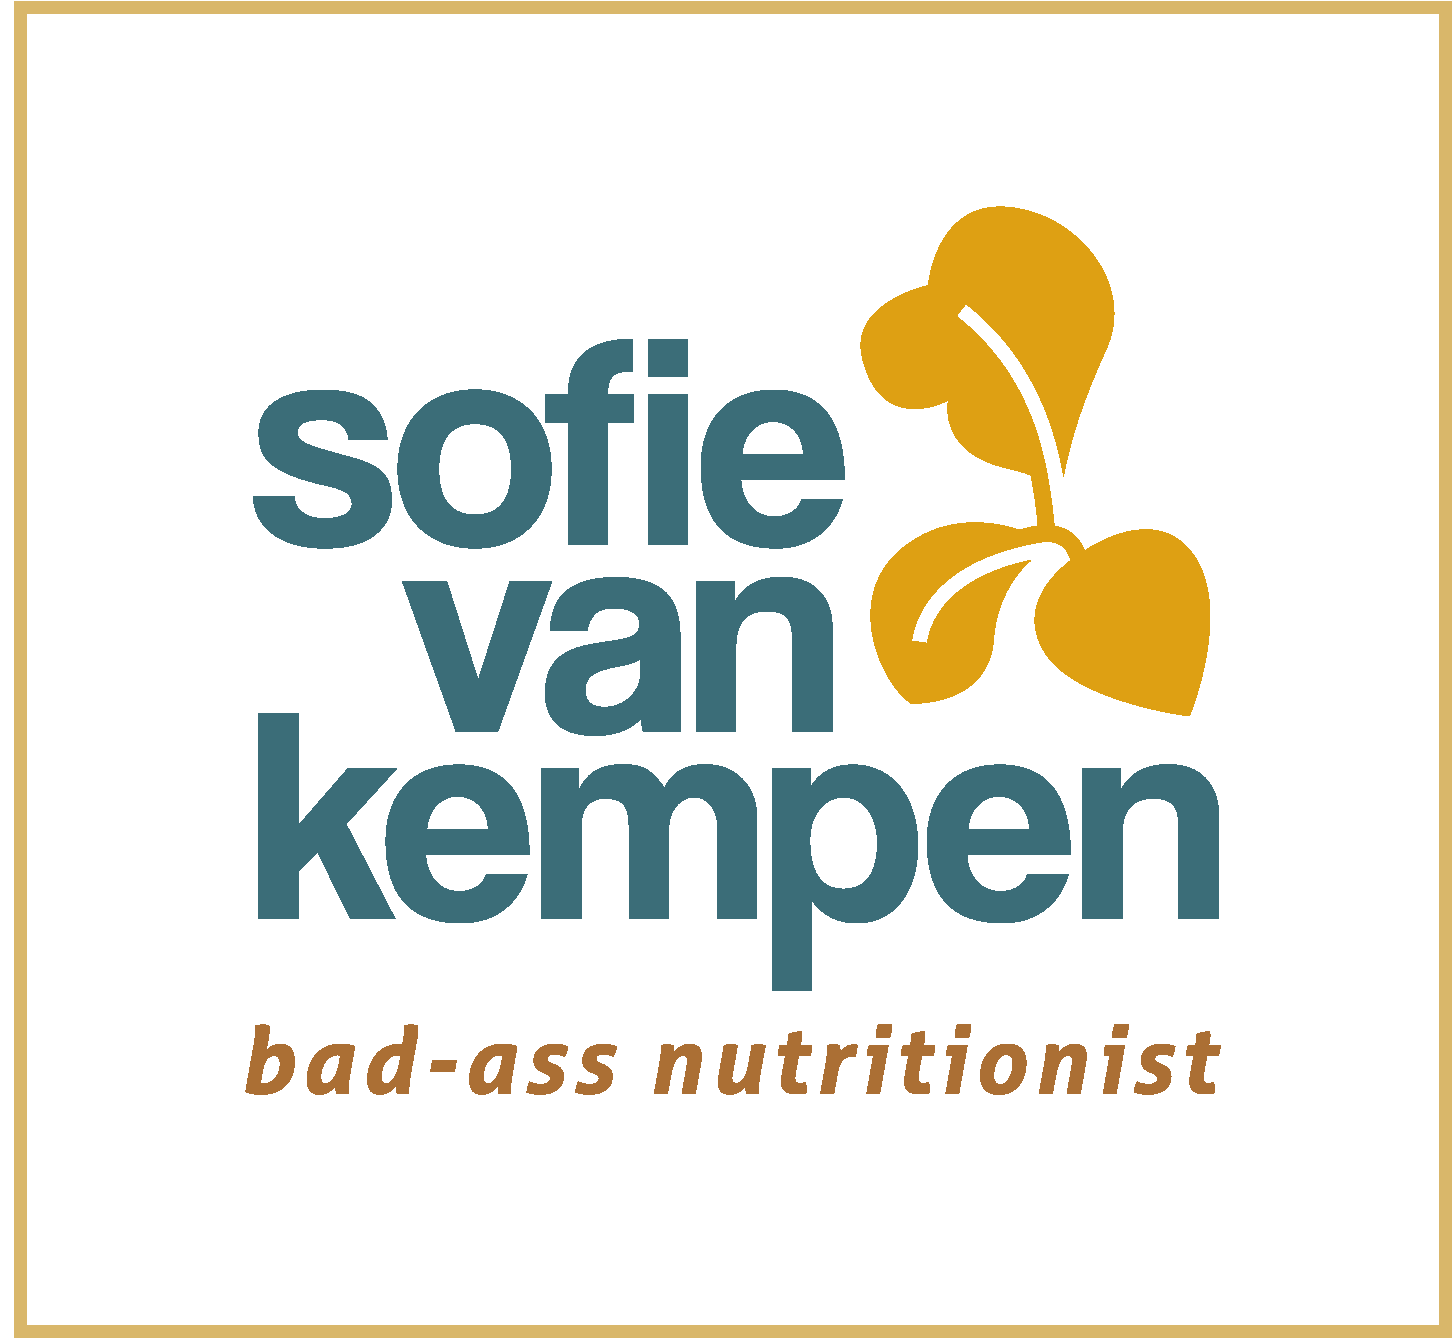 Sofie van Kempen